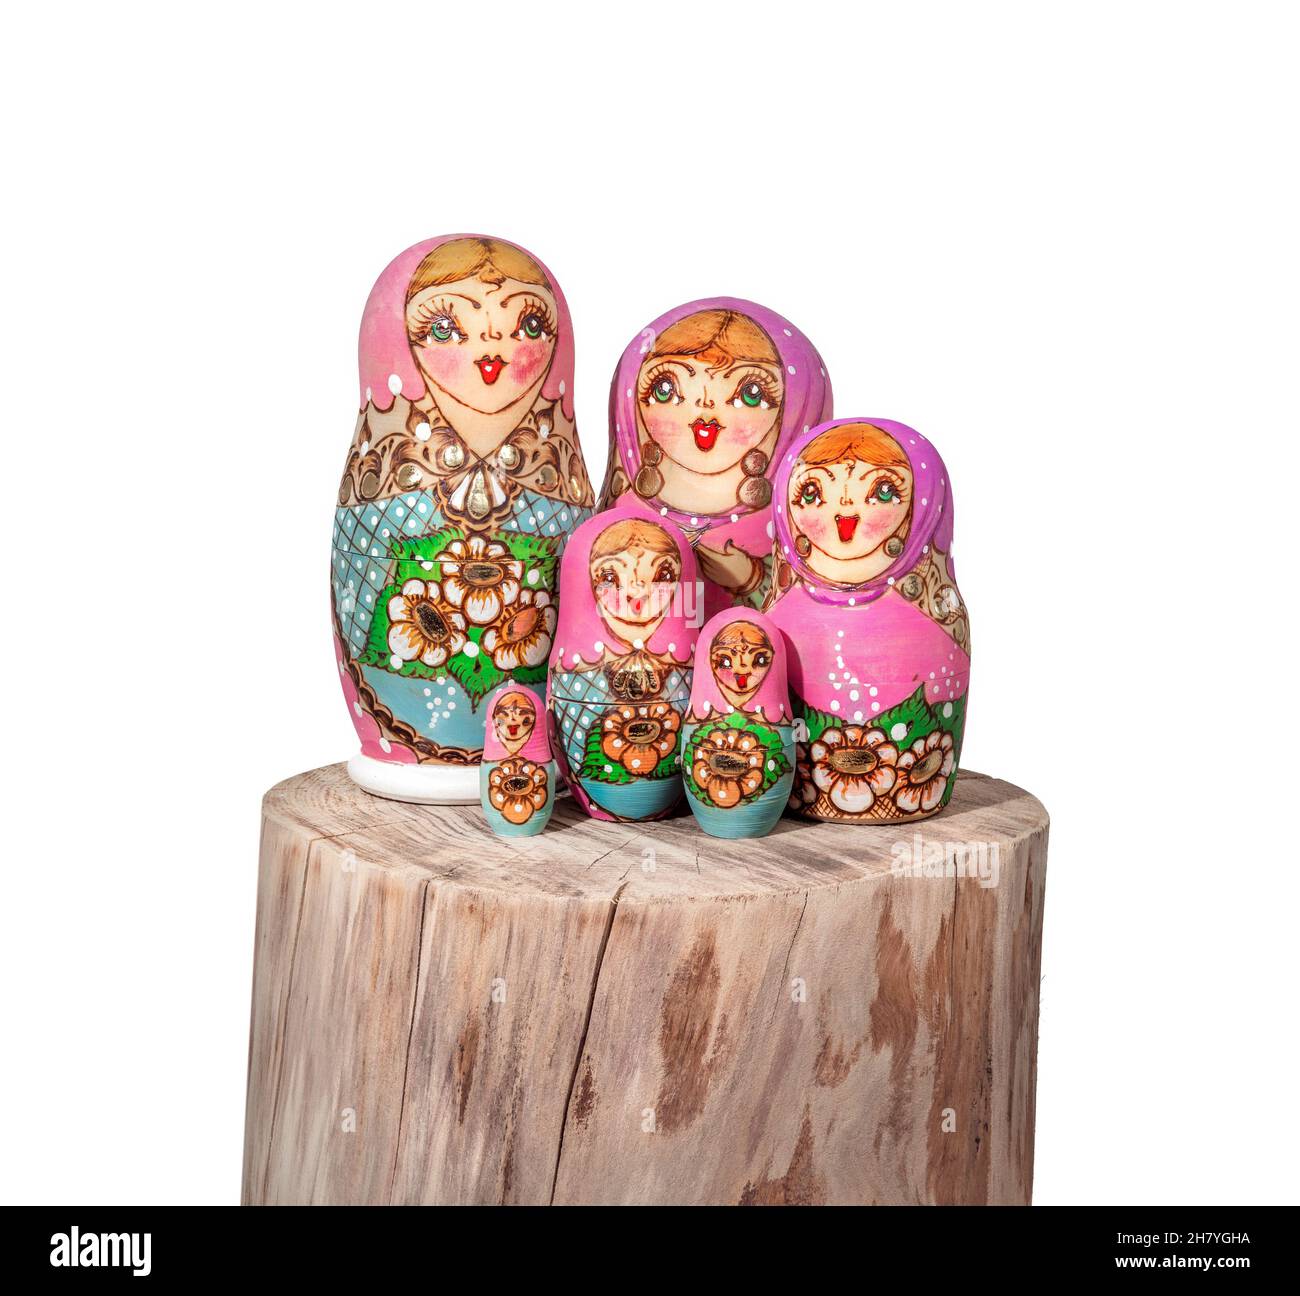 Muñecas Babushka arregladas en madera. Grupo de muñecos de apilamiento rusos pintados de colores también conocidos como muñeca Matroska o muñecas de té rusas. Símbolo de gra Foto de stock